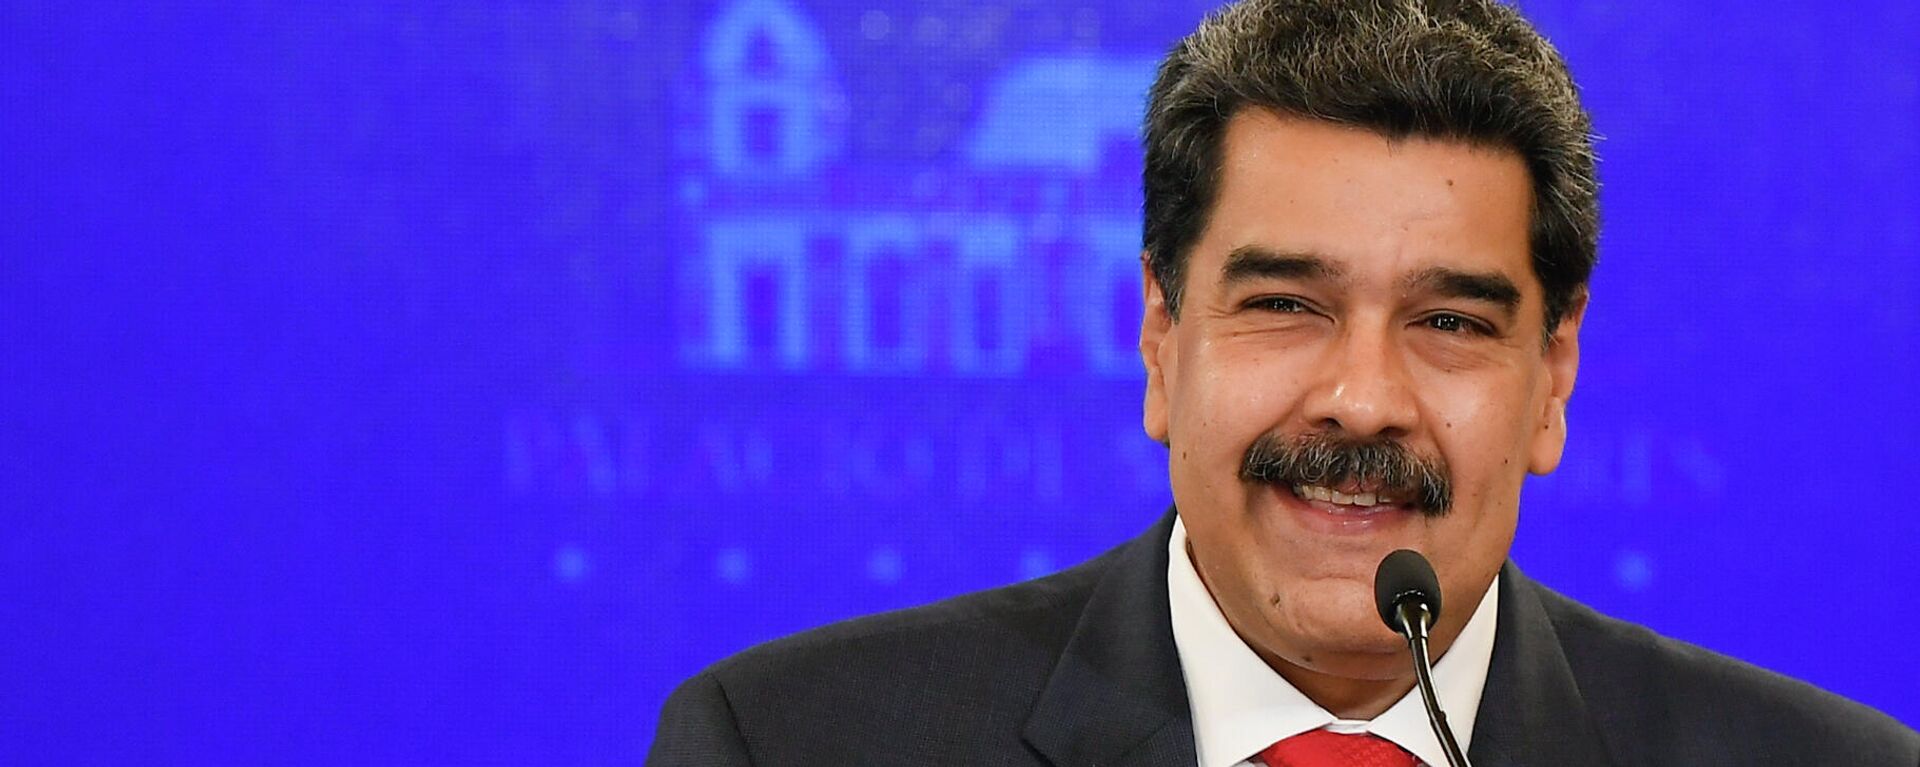 Nicolás Maduro, presidente de Venezuela - Sputnik Mundo, 1920, 01.11.2021